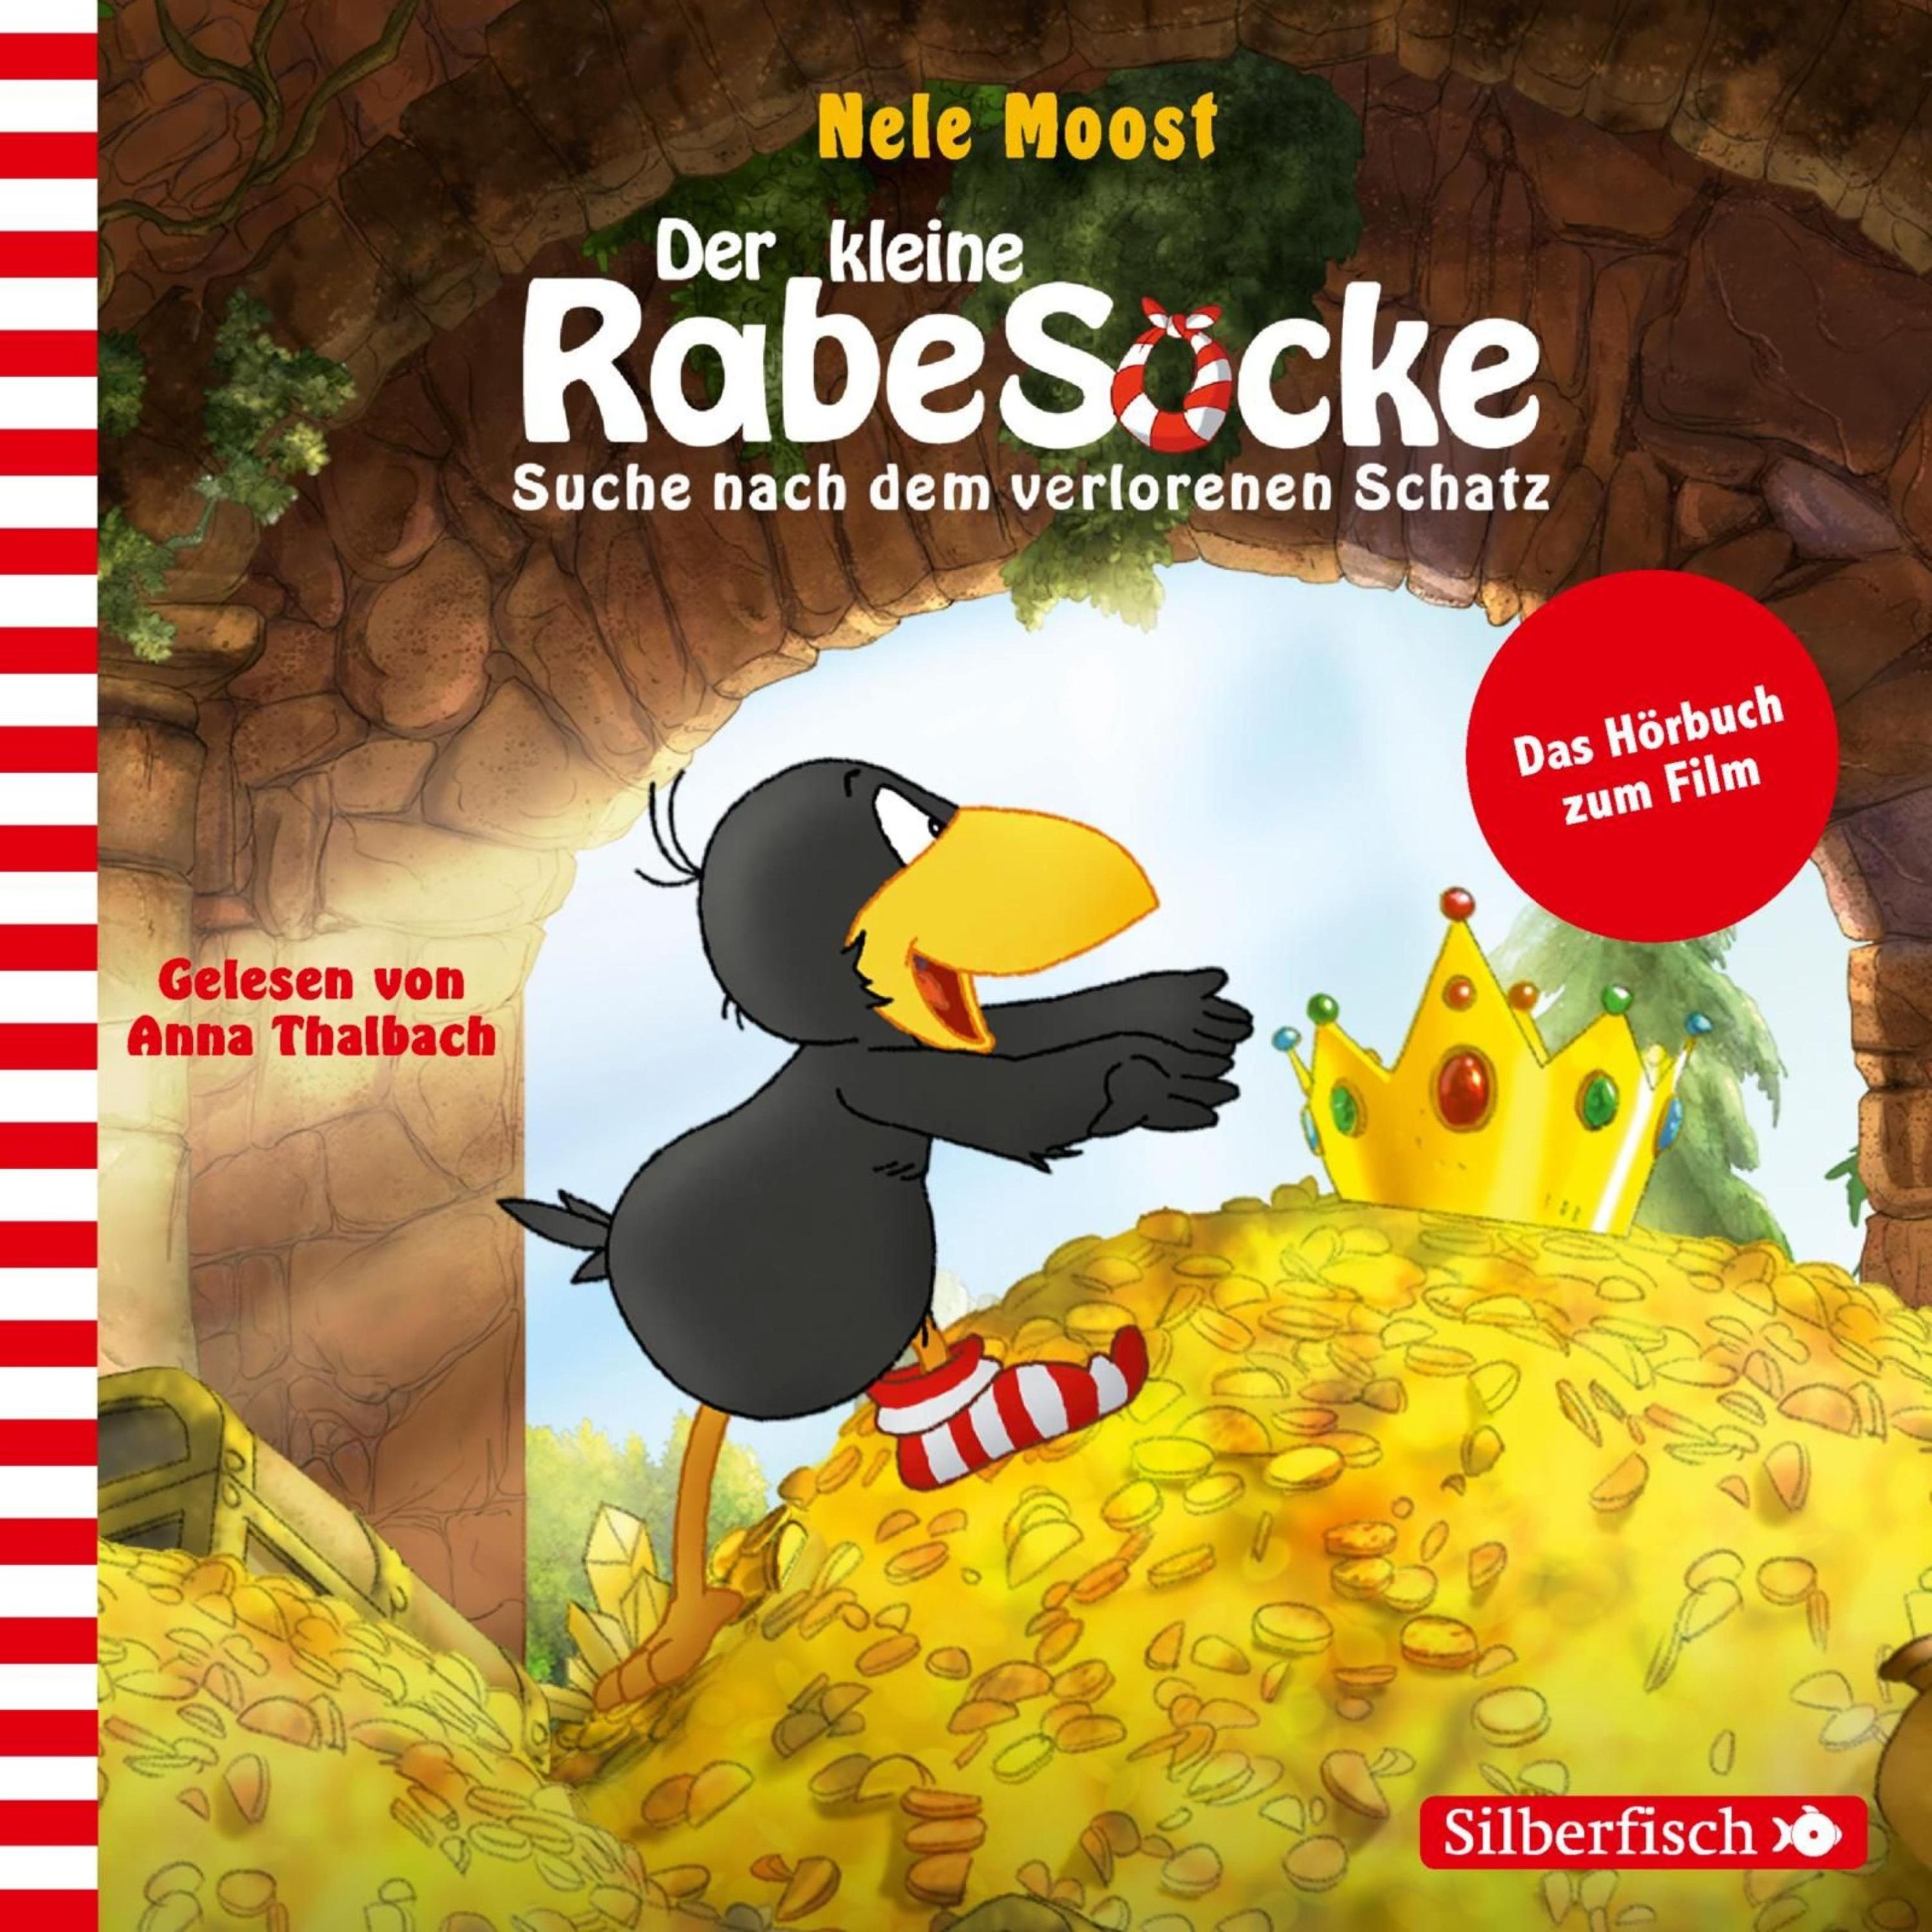 Der kleine Rabe Socke - Suche nach dem verlorenen Schatz Hörbuch Download